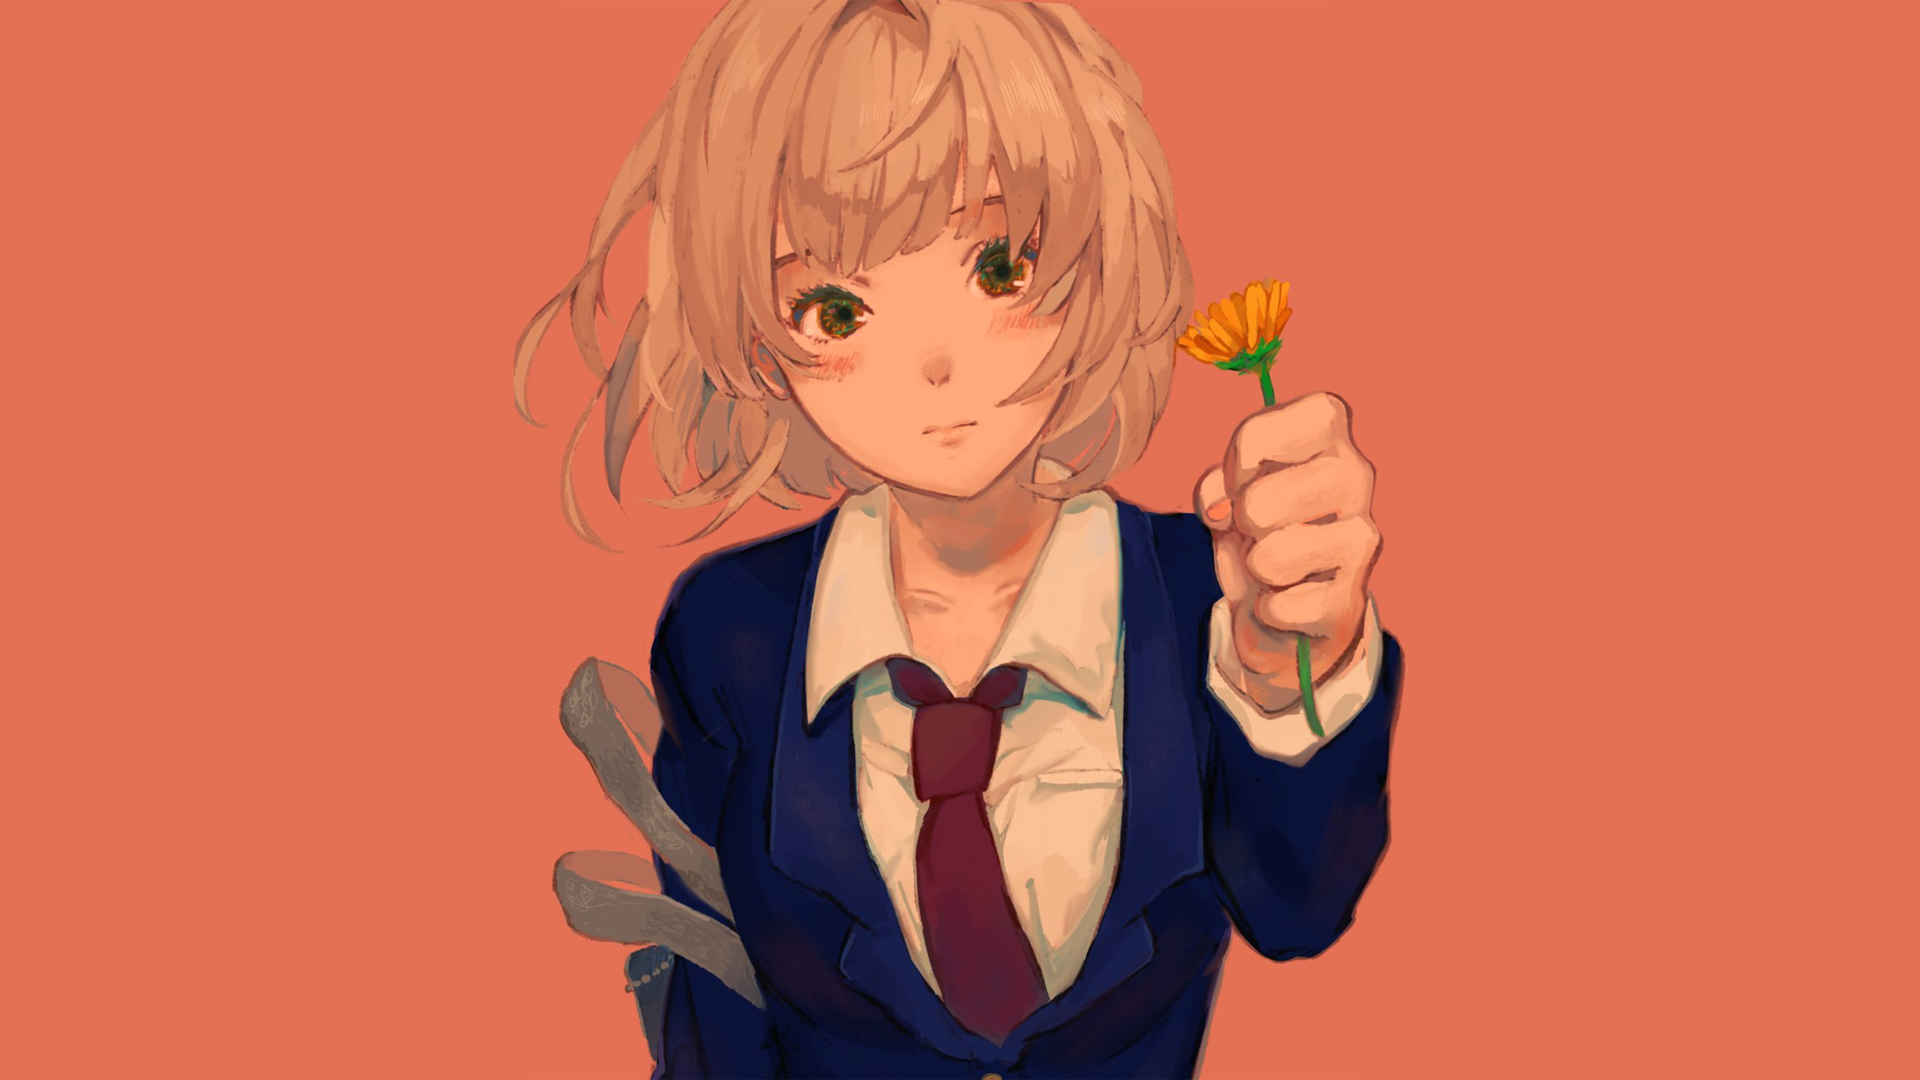 Anime 1920x1080 anime anime girls manga blonde orange orange background tie simple background